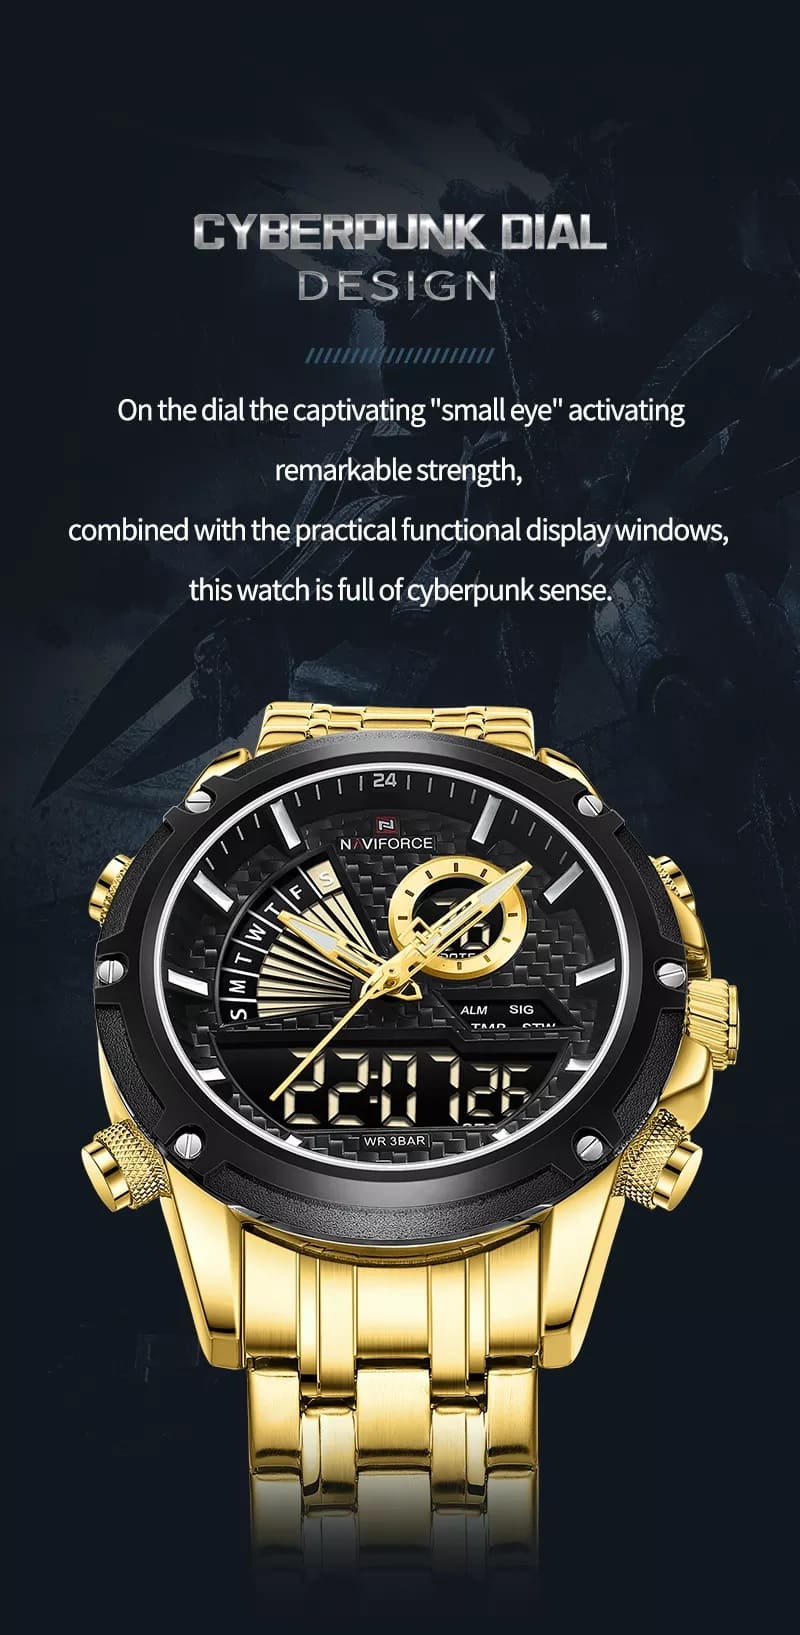 Naviforce Men's Watch NF9205 G B | Watches Prime